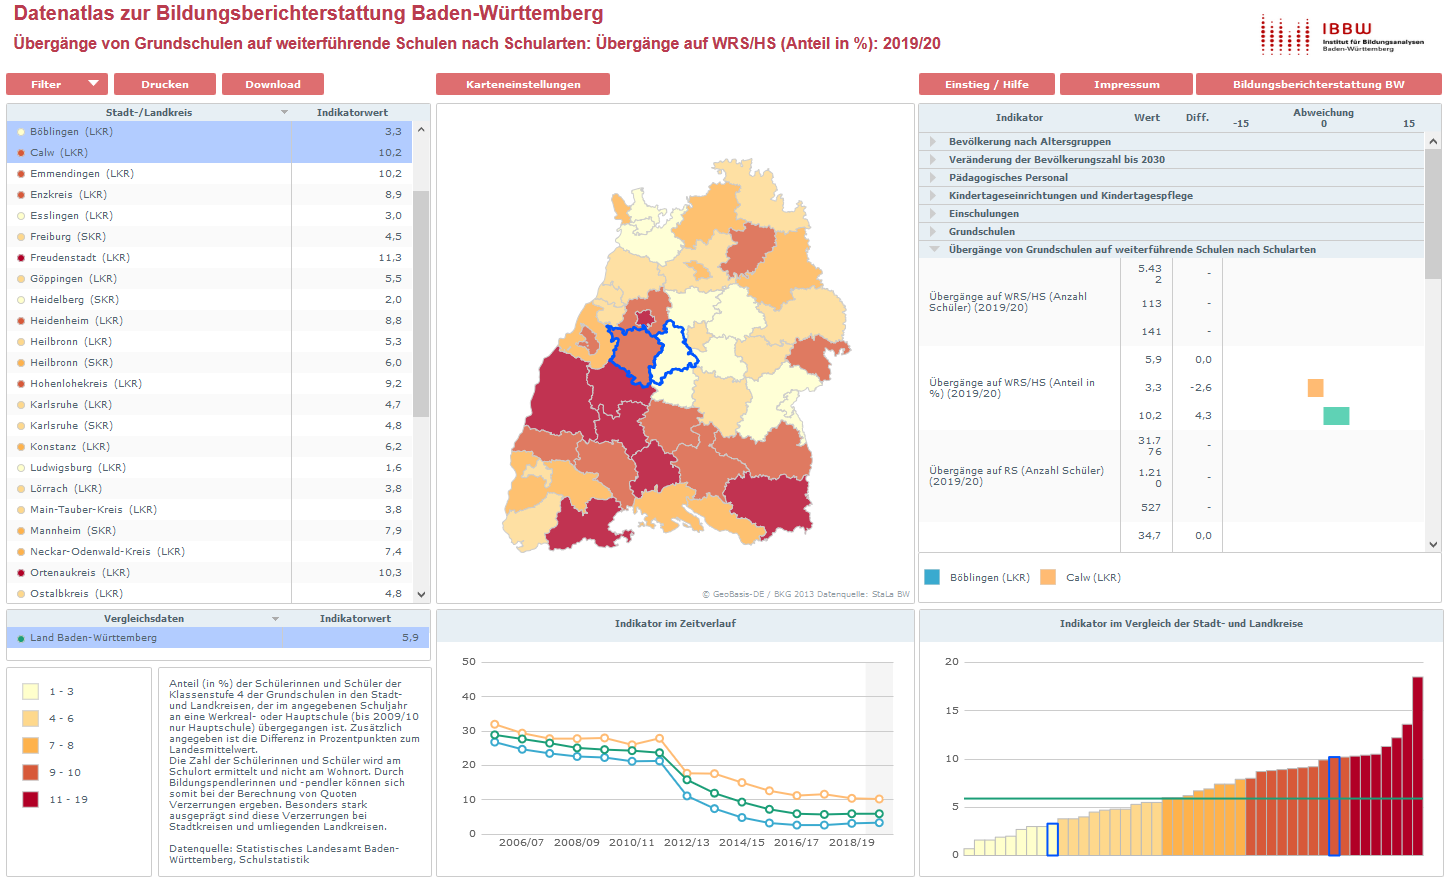 Start Datenatlas zur Bildungsberichterstattung für Baden-Württemberg